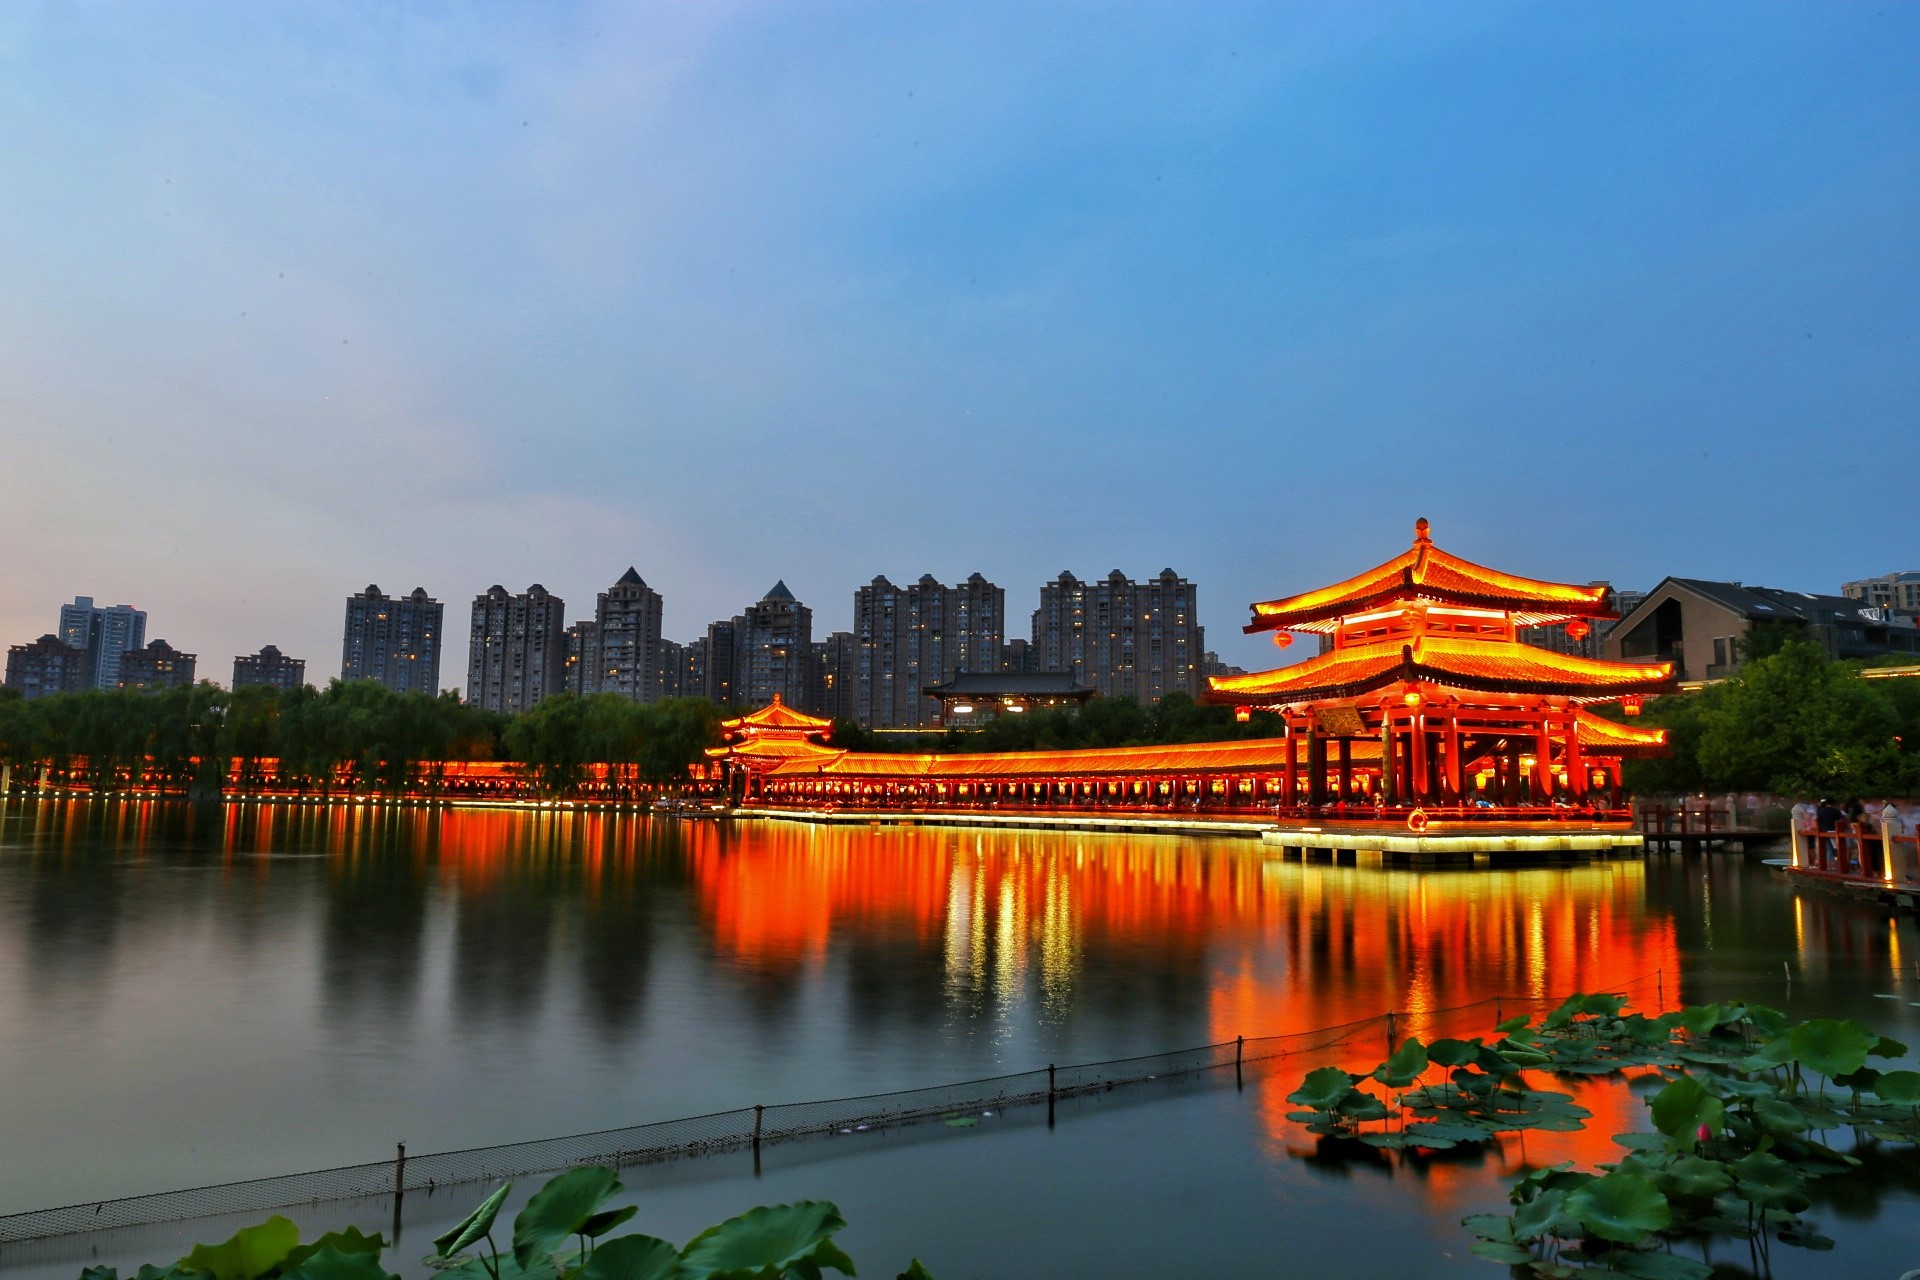 Lotus palace of Tang Dynasty